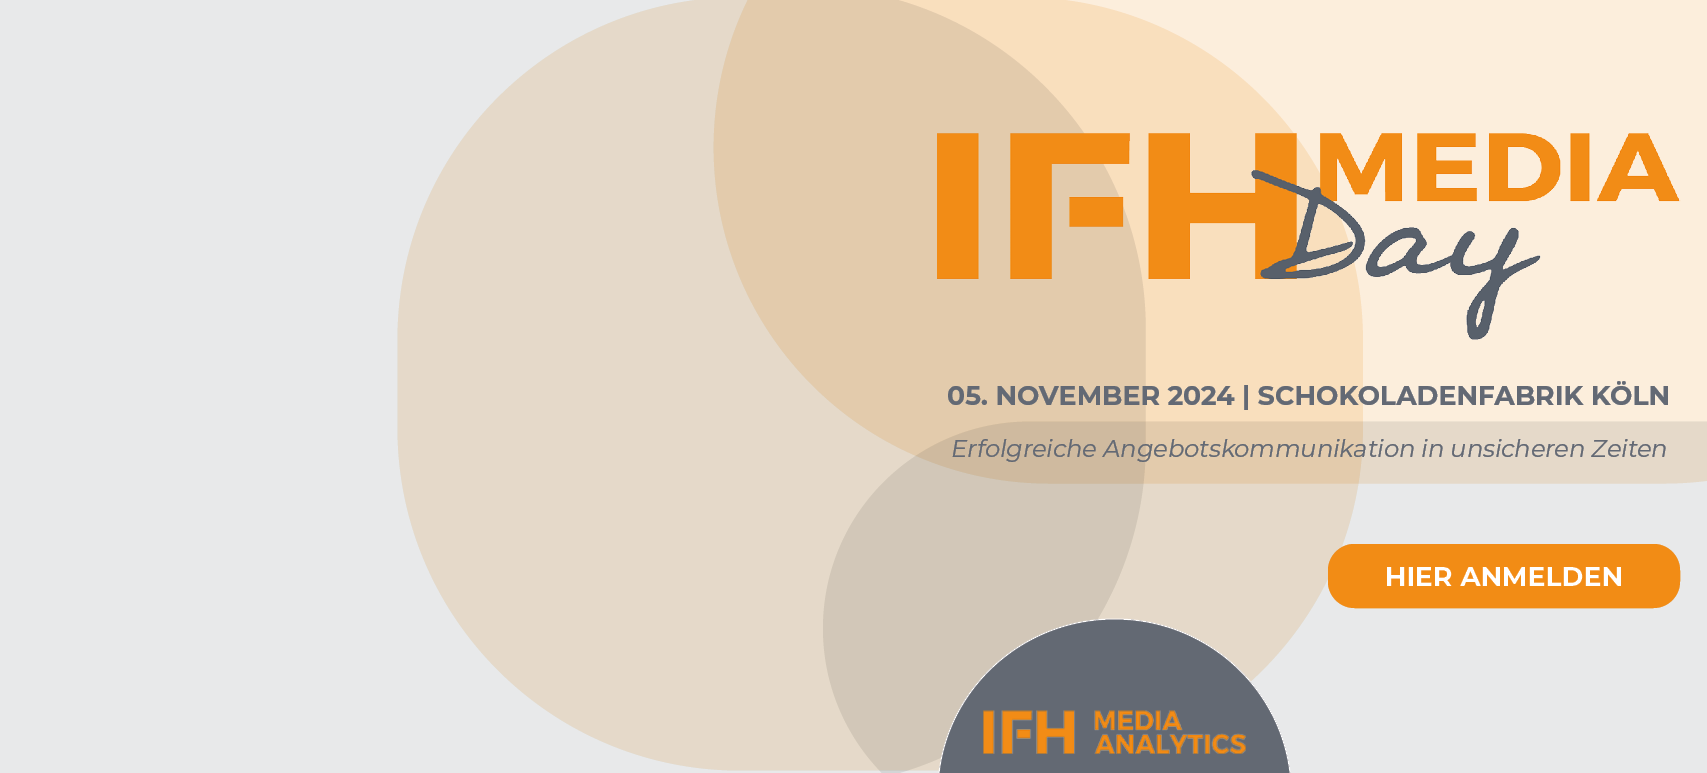 Die Grafik zeigt das Logo des IFH MEDIA DAY mit grafischen Formen wie Kreisen und Dreiecken im Hintergrund.